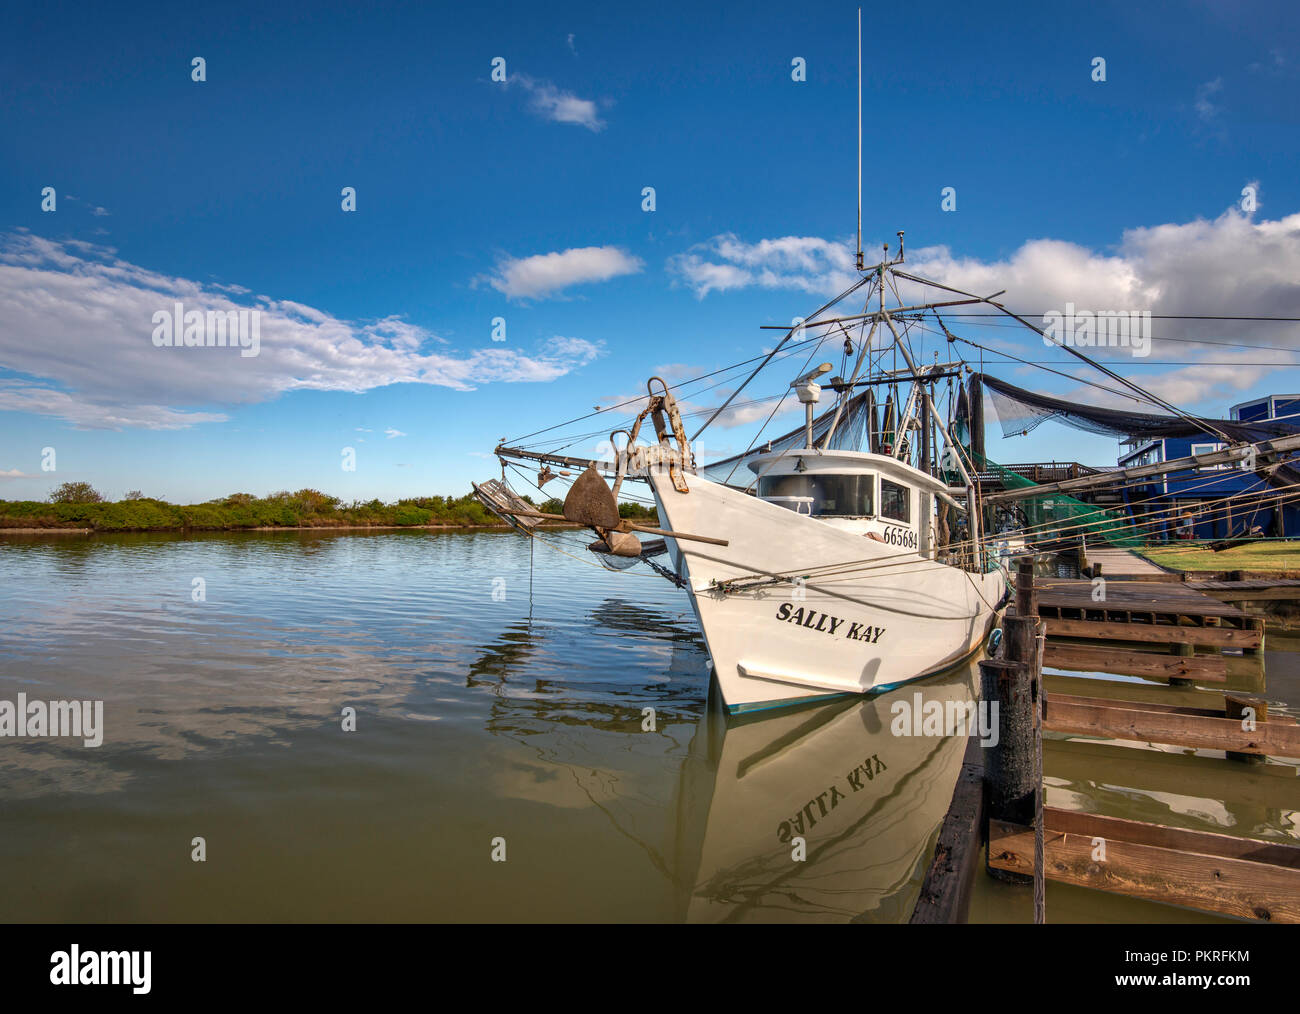 Bateau de crevettes au quai à la Colorado River près de son estuaire au golfe du Mexique, près de Matagorda, Texas, États-Unis Banque D'Images